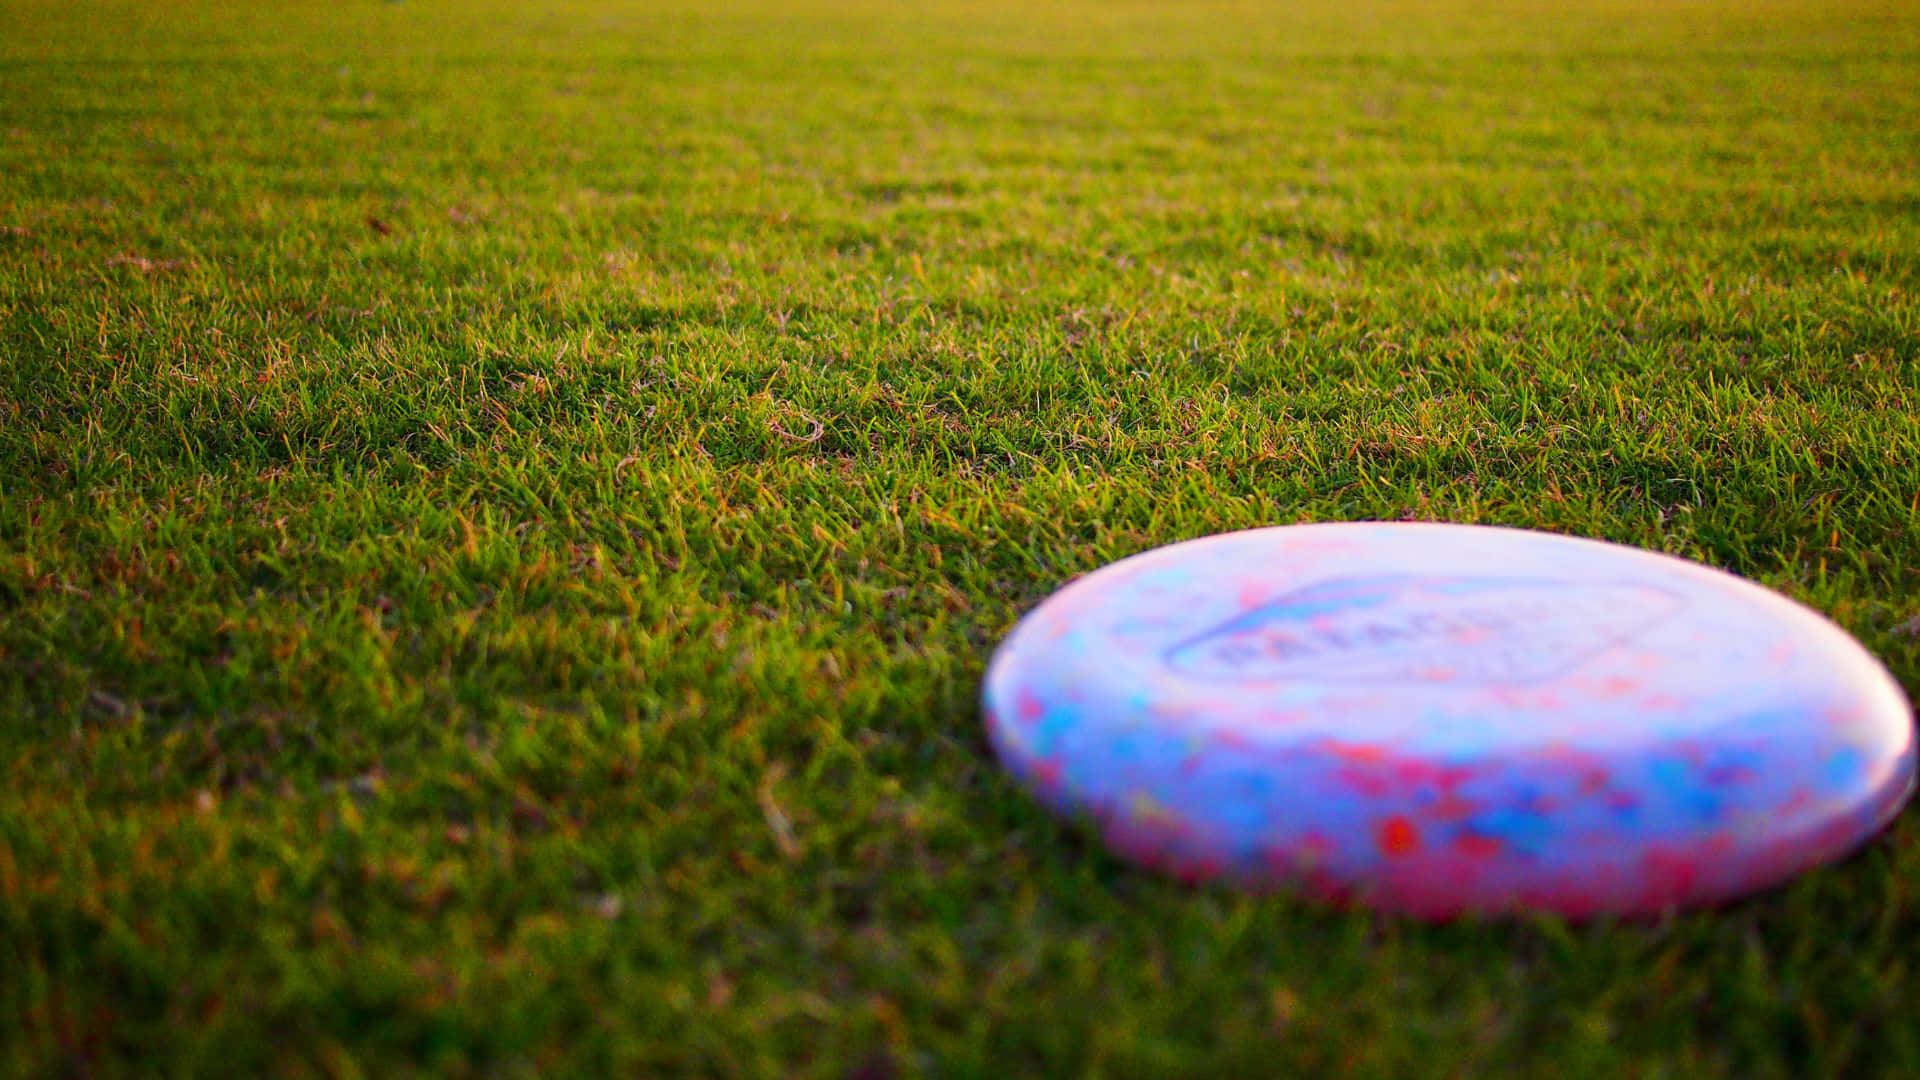 En frisbee sidder på græsset.